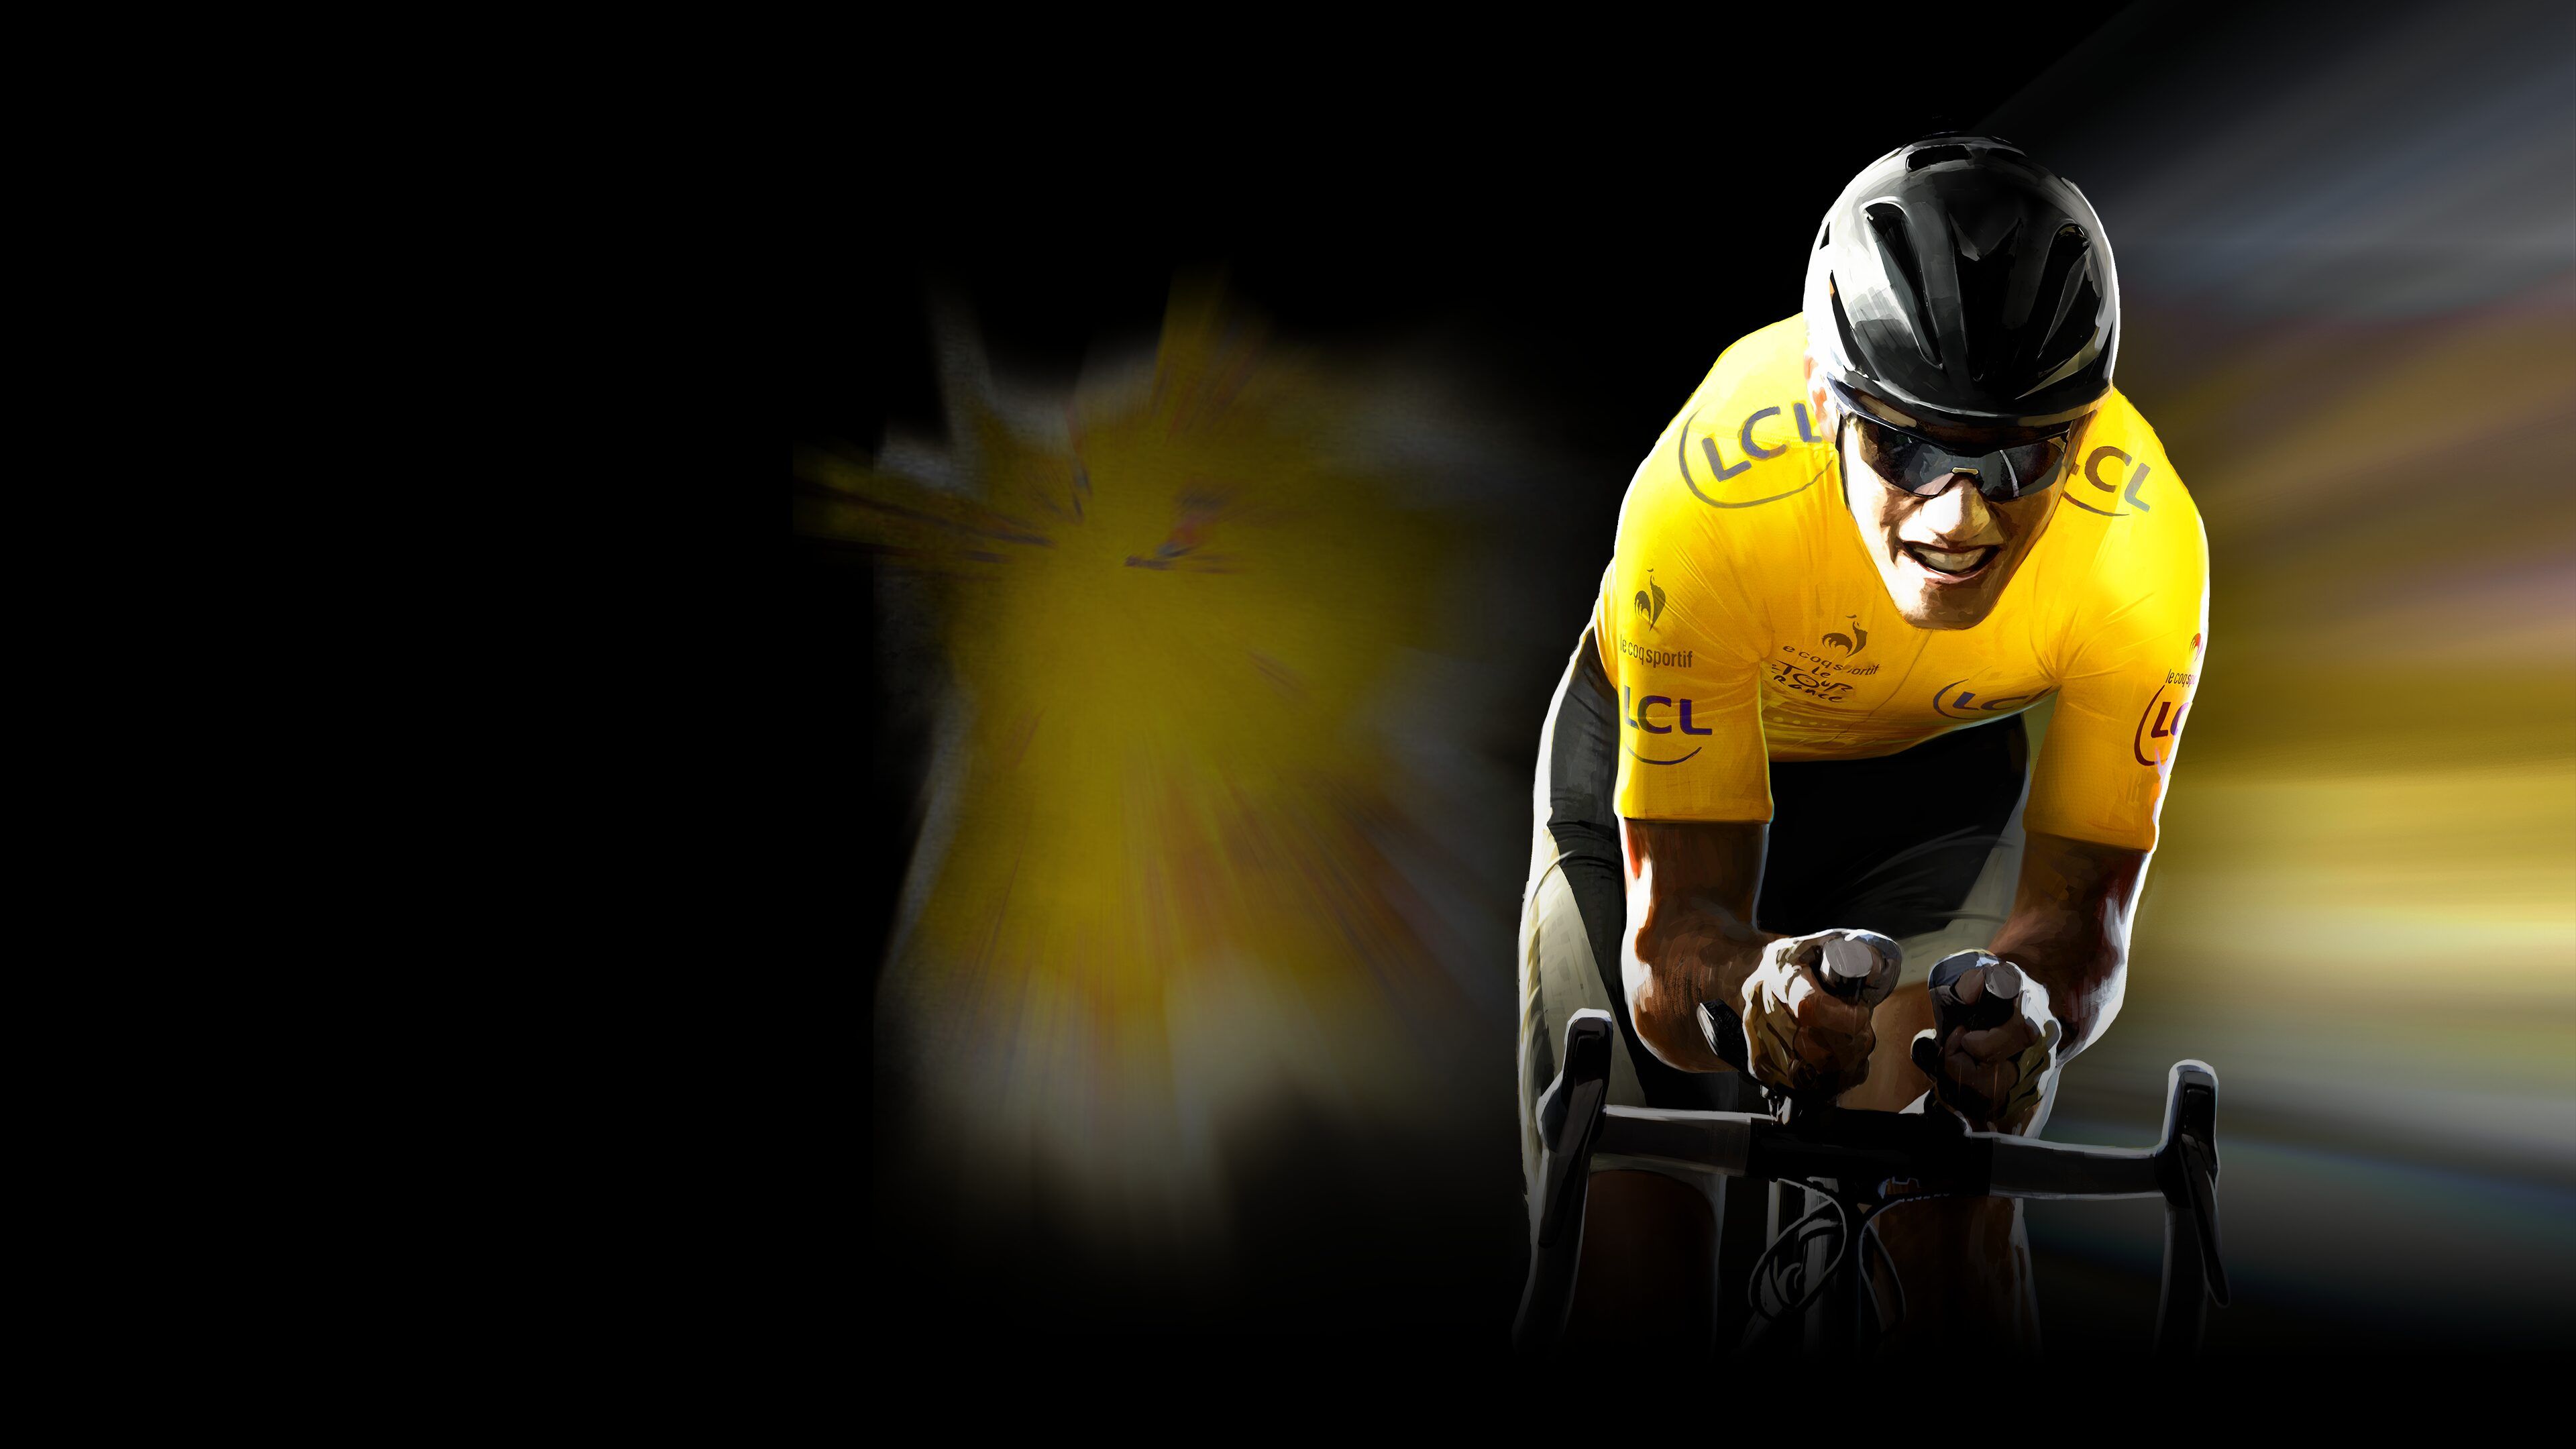 Tour de France 2015 cover image